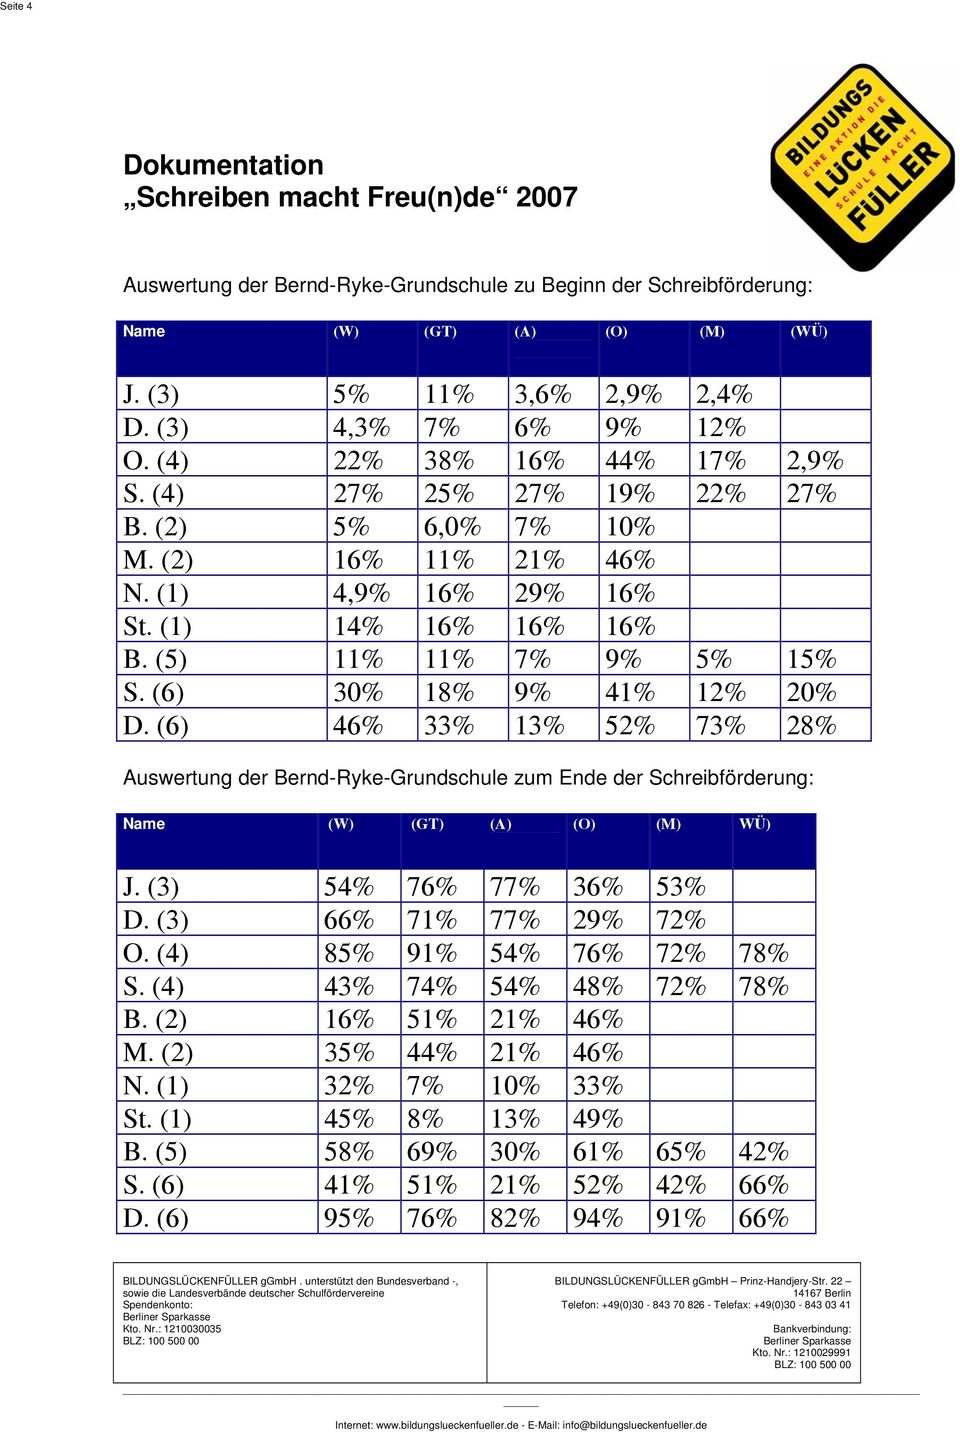 (6) 46% 33% 13% 52% 73% 28% Auswertung der Bernd-Ryke-Grundschule zum Ende der Schreibförderung: Name (W) (GT) (A) (O) (M) WÜ) J. (3) 54% 76% 77% 36% 53% D. (3) 66% 71% 77% 29% 72% O.